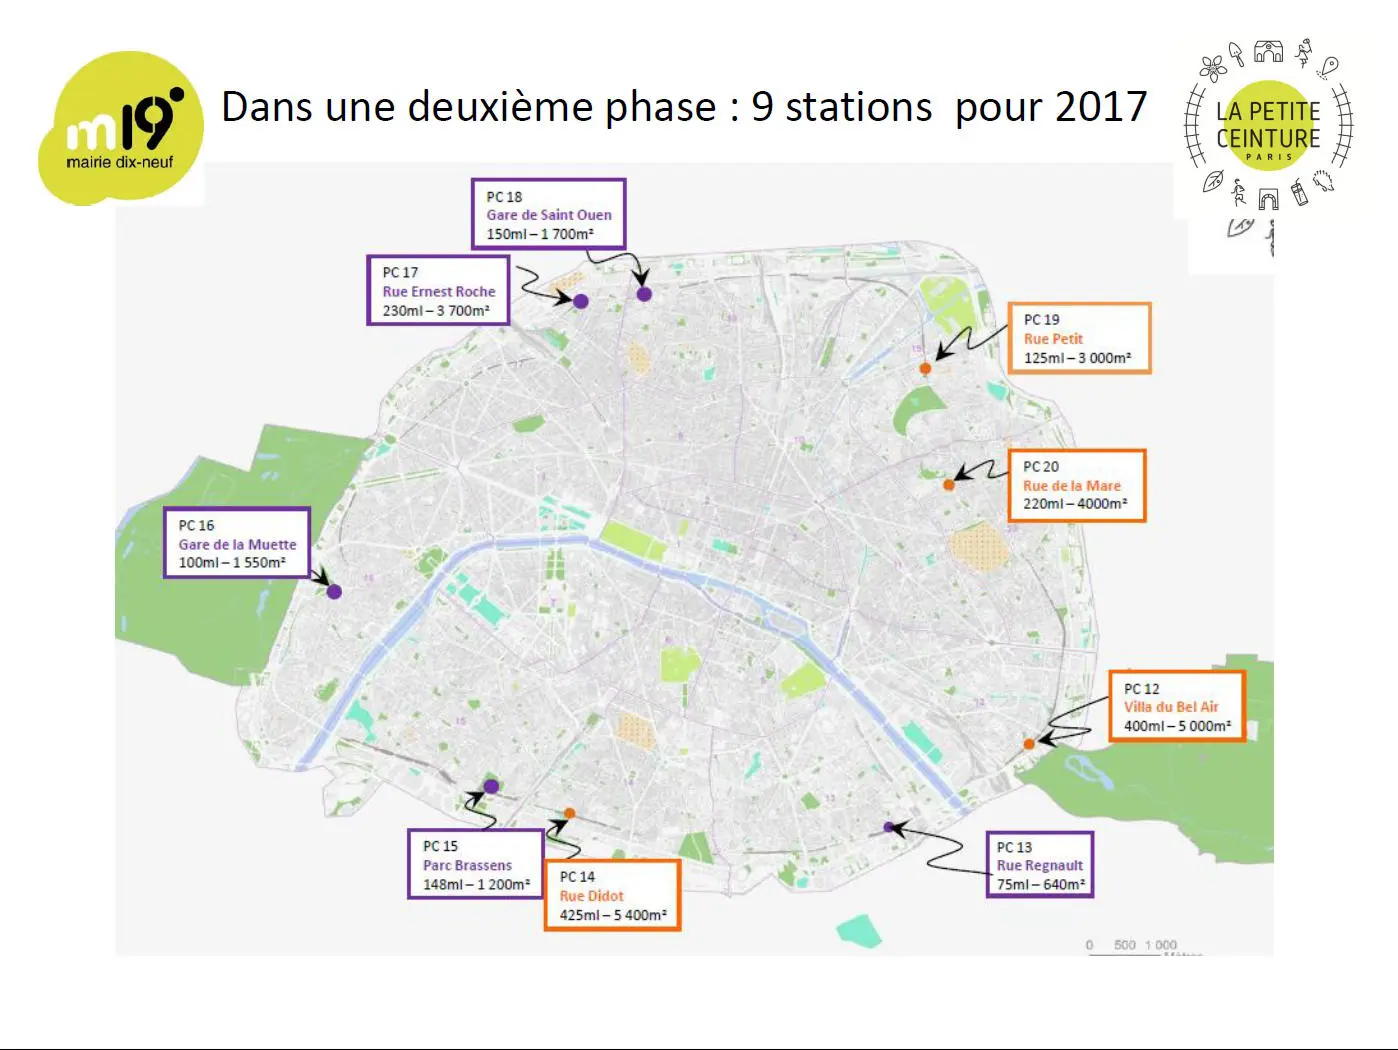 Carte des chantiers participatifs exploités sur la Petite Ceinture ferroviaire en 2017 